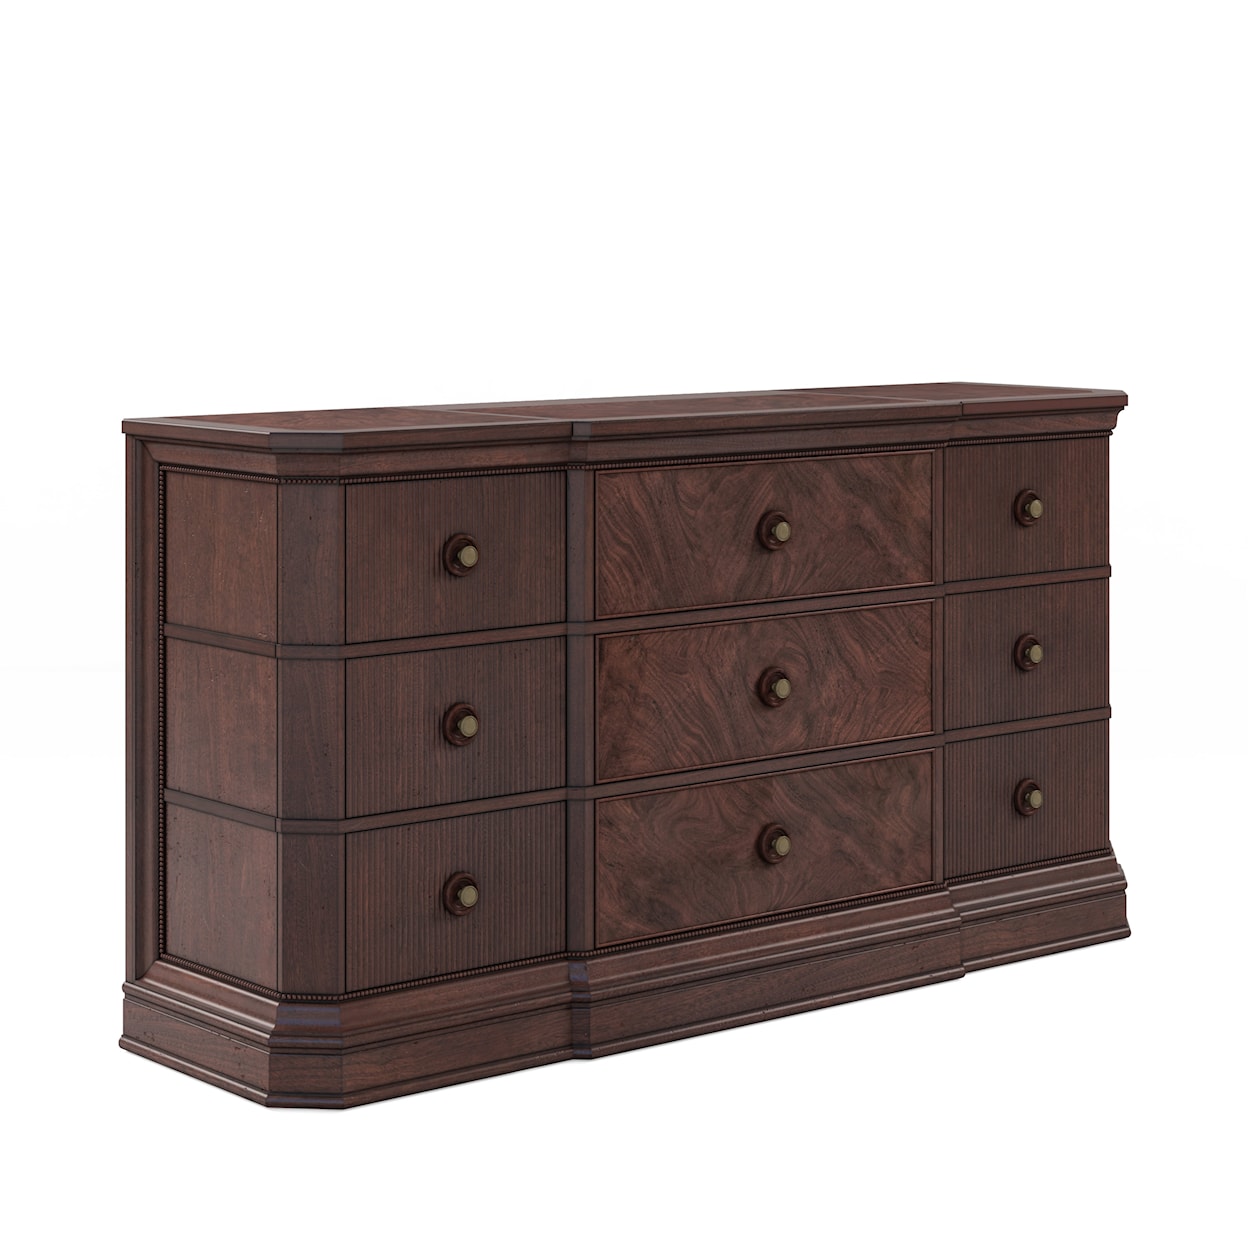 A.R.T. Furniture Inc 328 - Revival Dresser